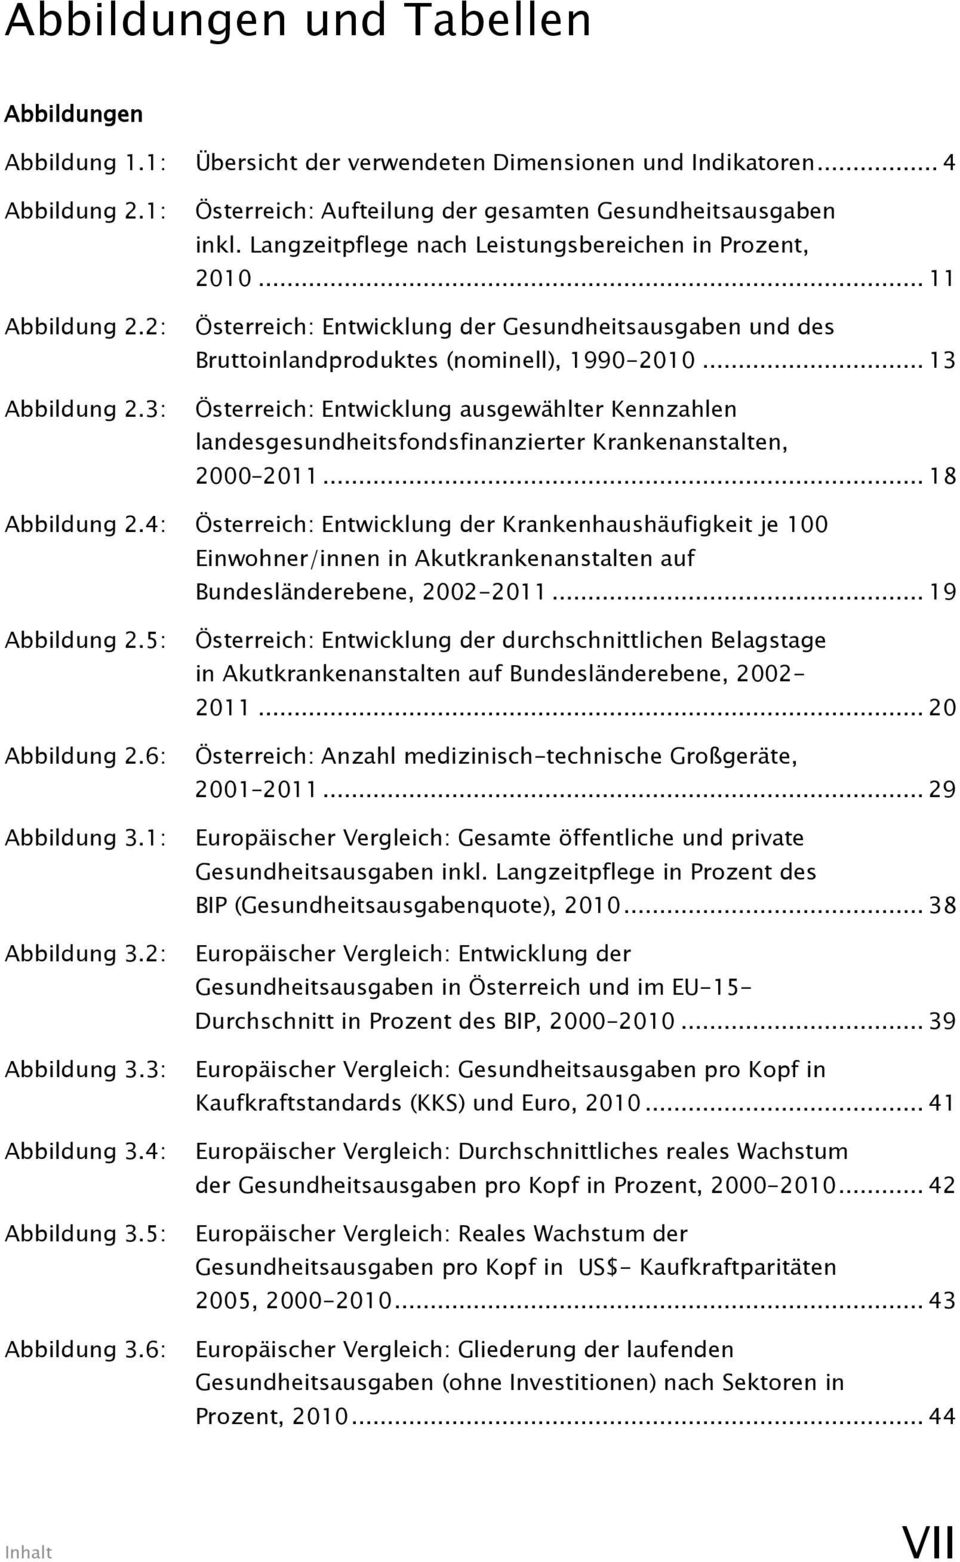 .. 11 Österreich: Entwicklung der Gesundheitsausgaben und des Bruttoinlandproduktes (nominell), 1990-2010.